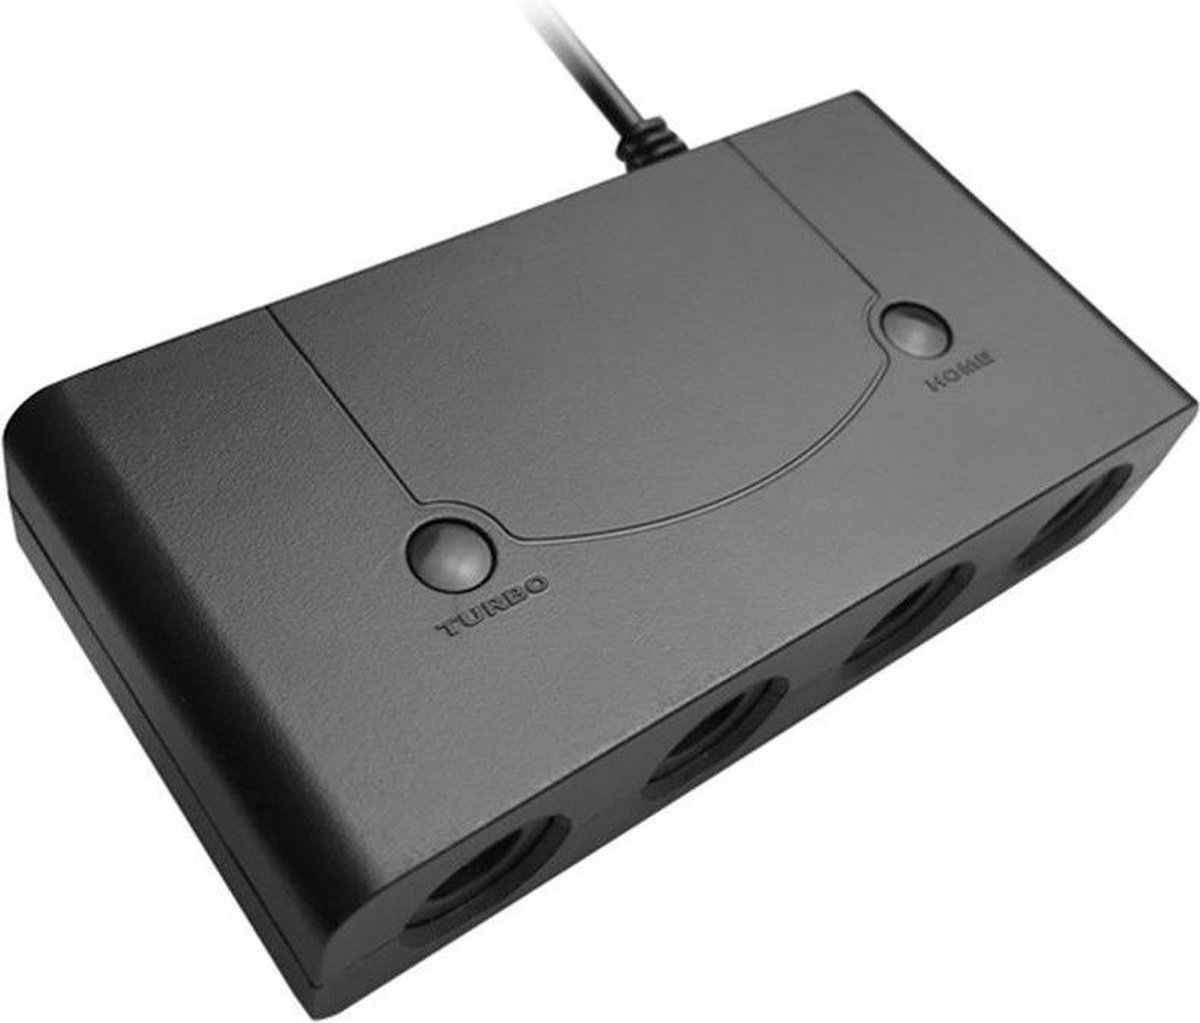 Bol Com Gamecube Usb Controller Adapter V2 Voor Wii U Nintendo Switch Pc Met Turbo En Home